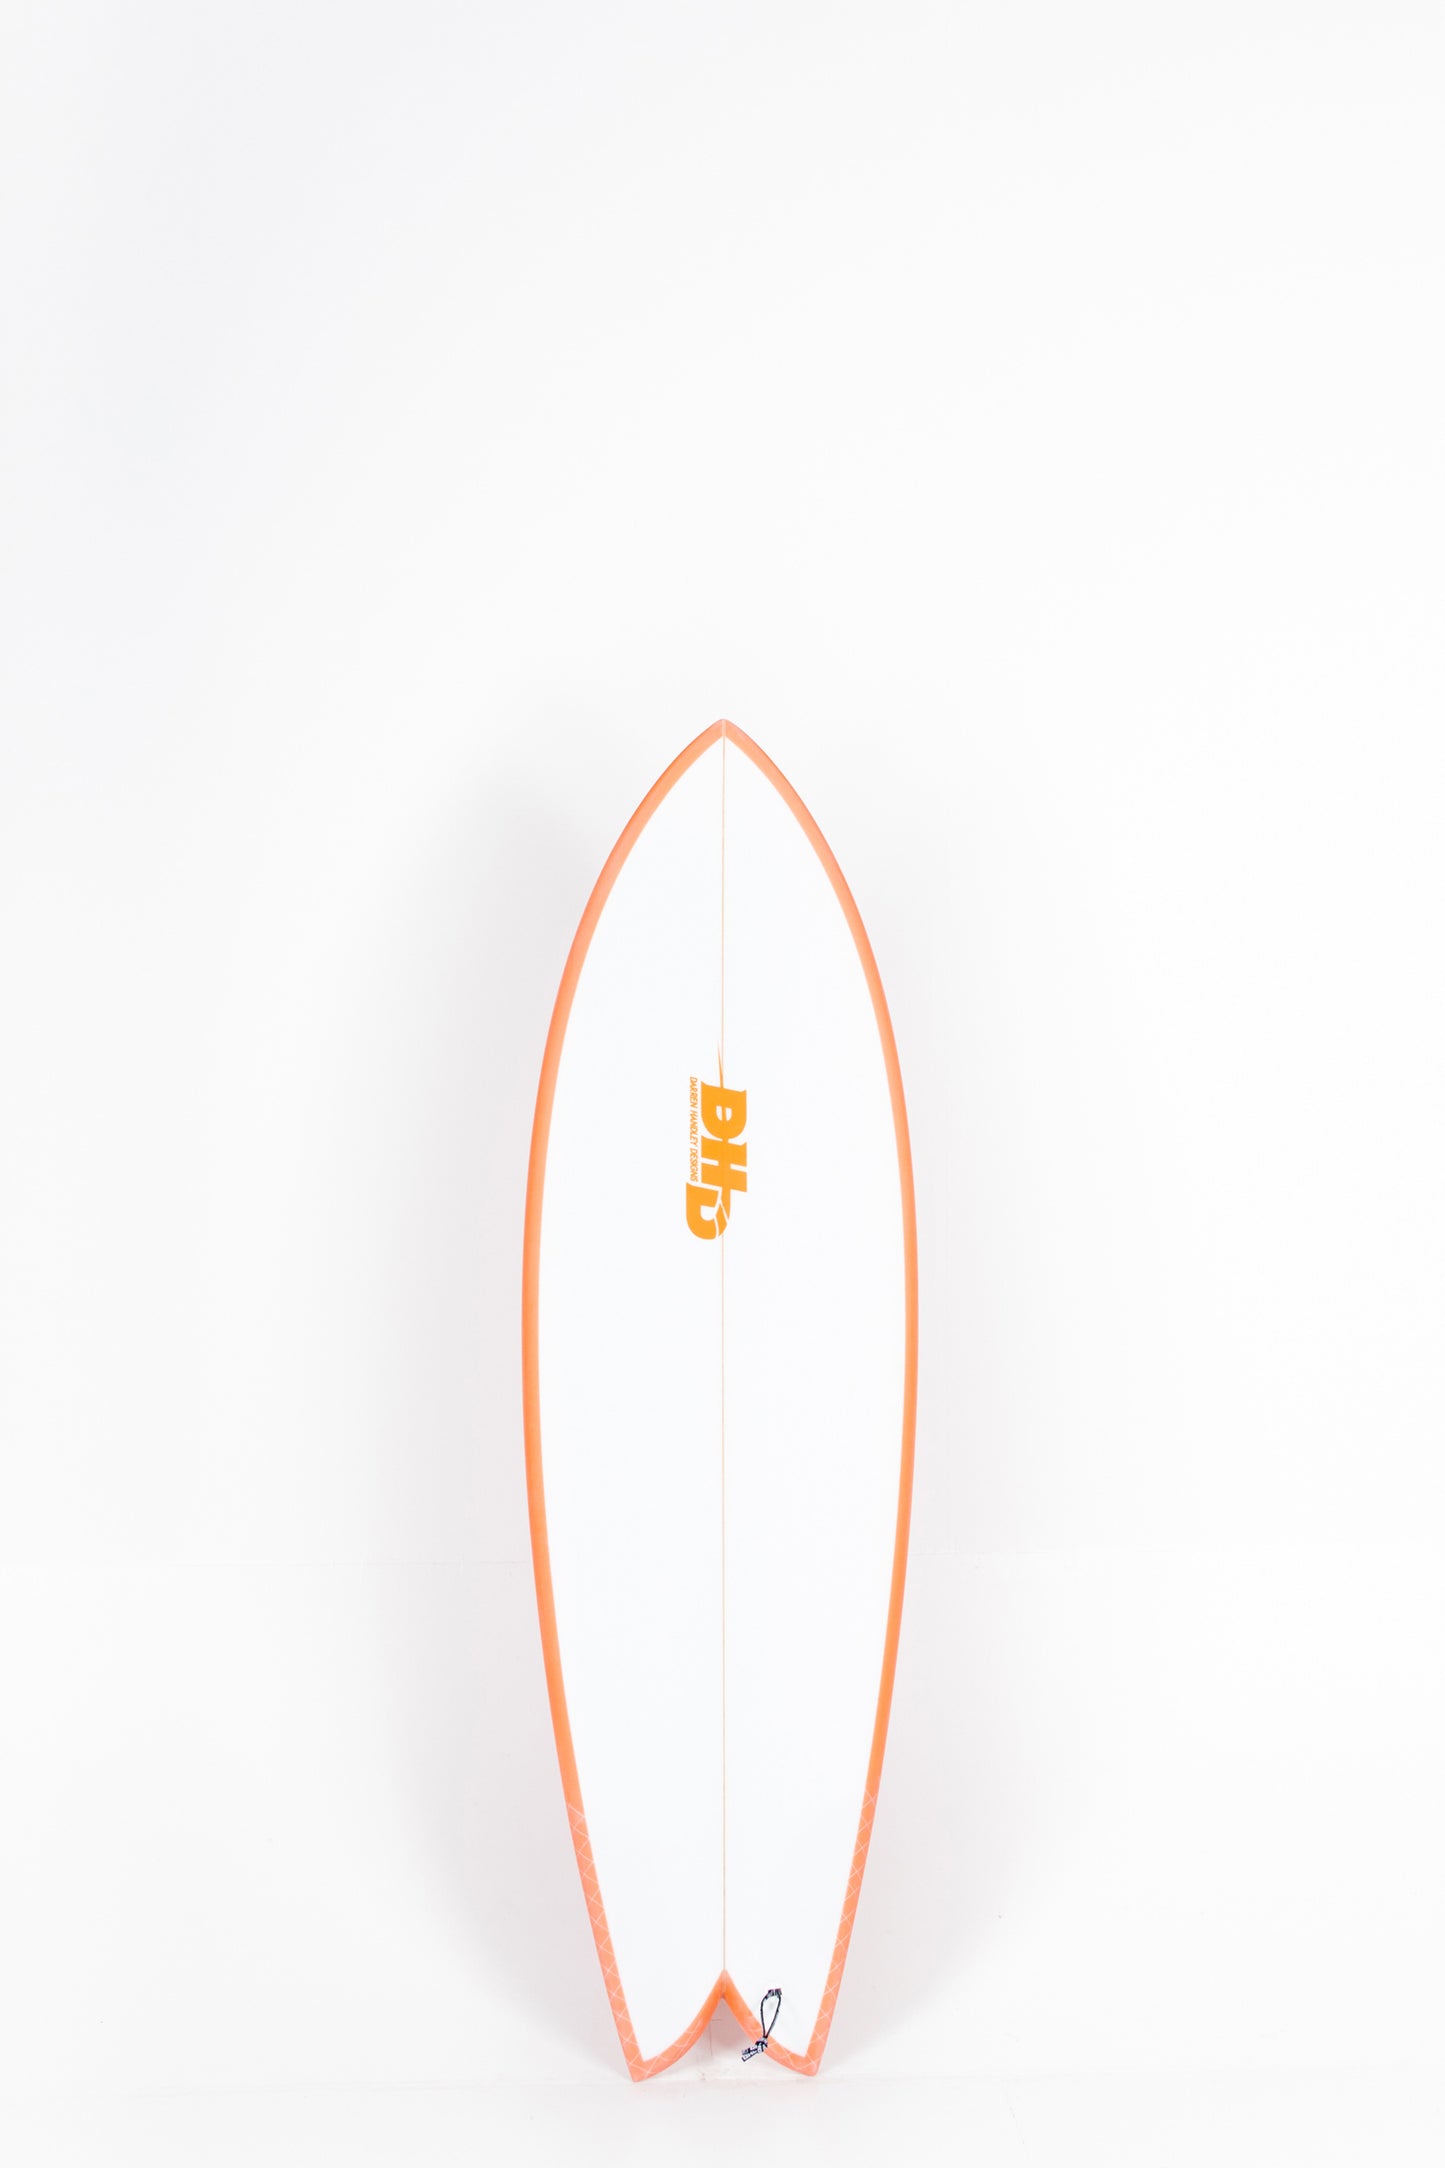 Pukas Surf Shop - DHD - MINI TWIN by Darren Handley - 5'9" x 20 1/2 x 2 3/8 x 32L.